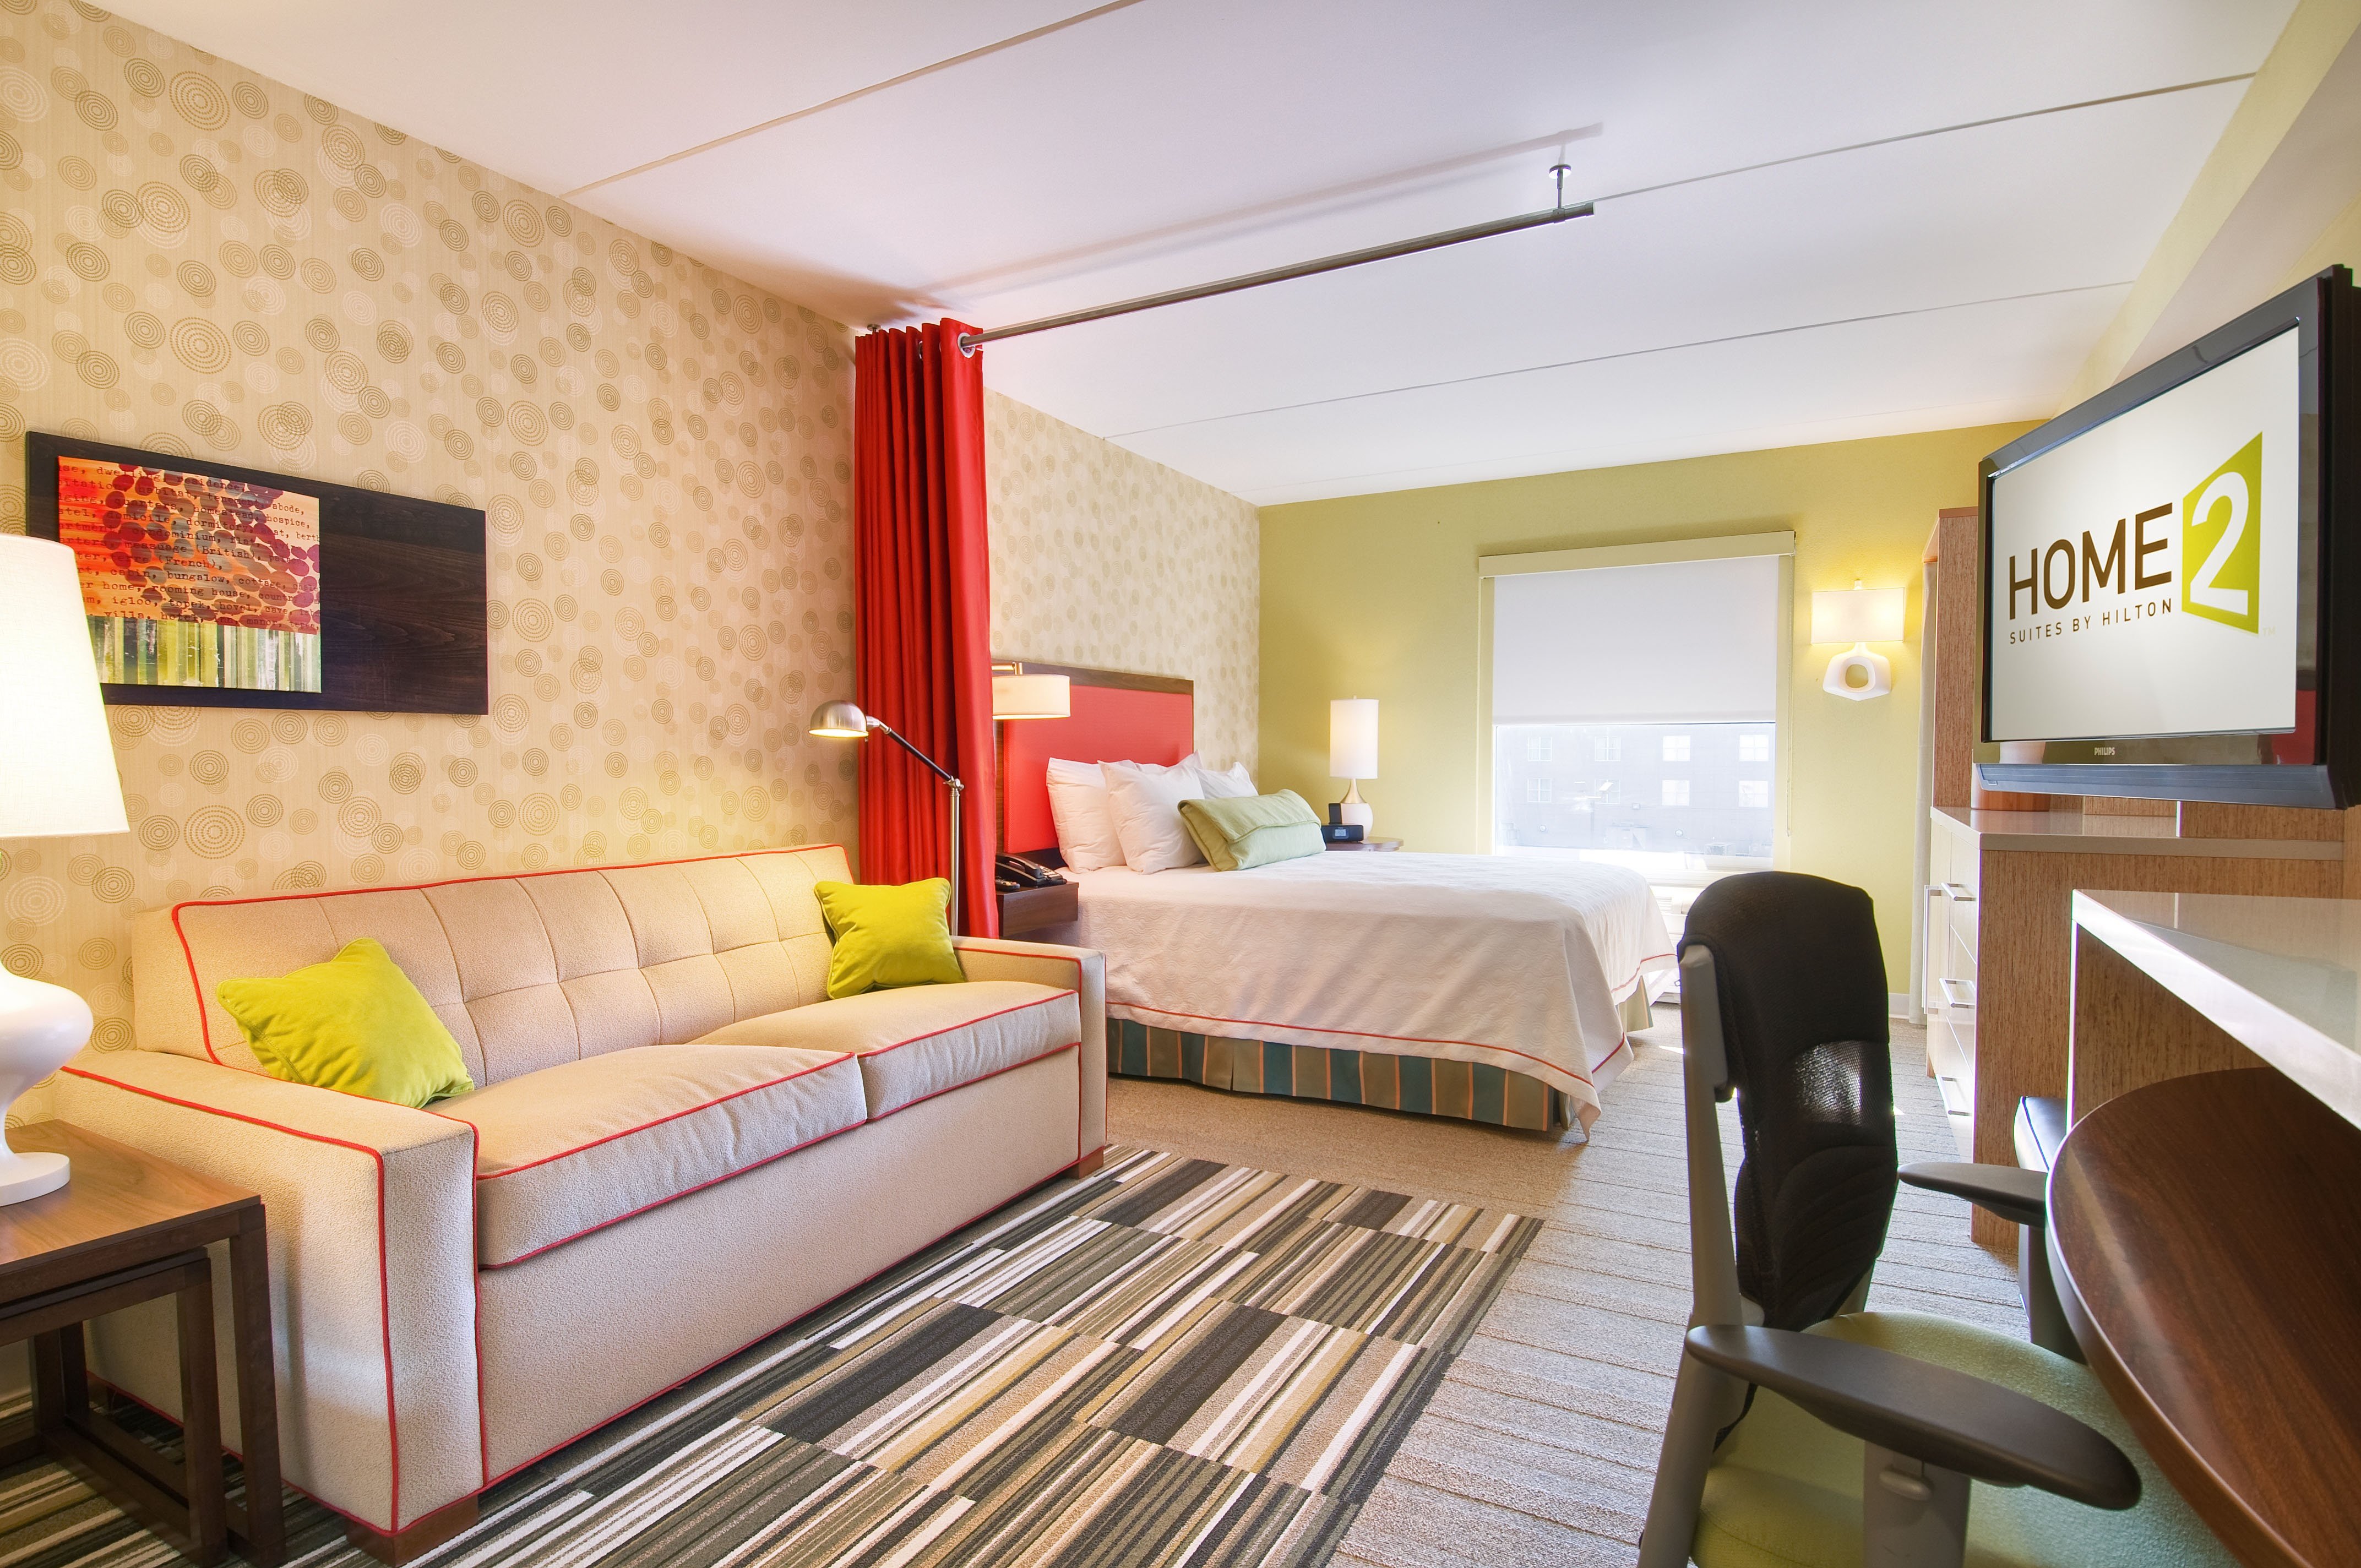 home 2 suites hilton mcdonough reviews